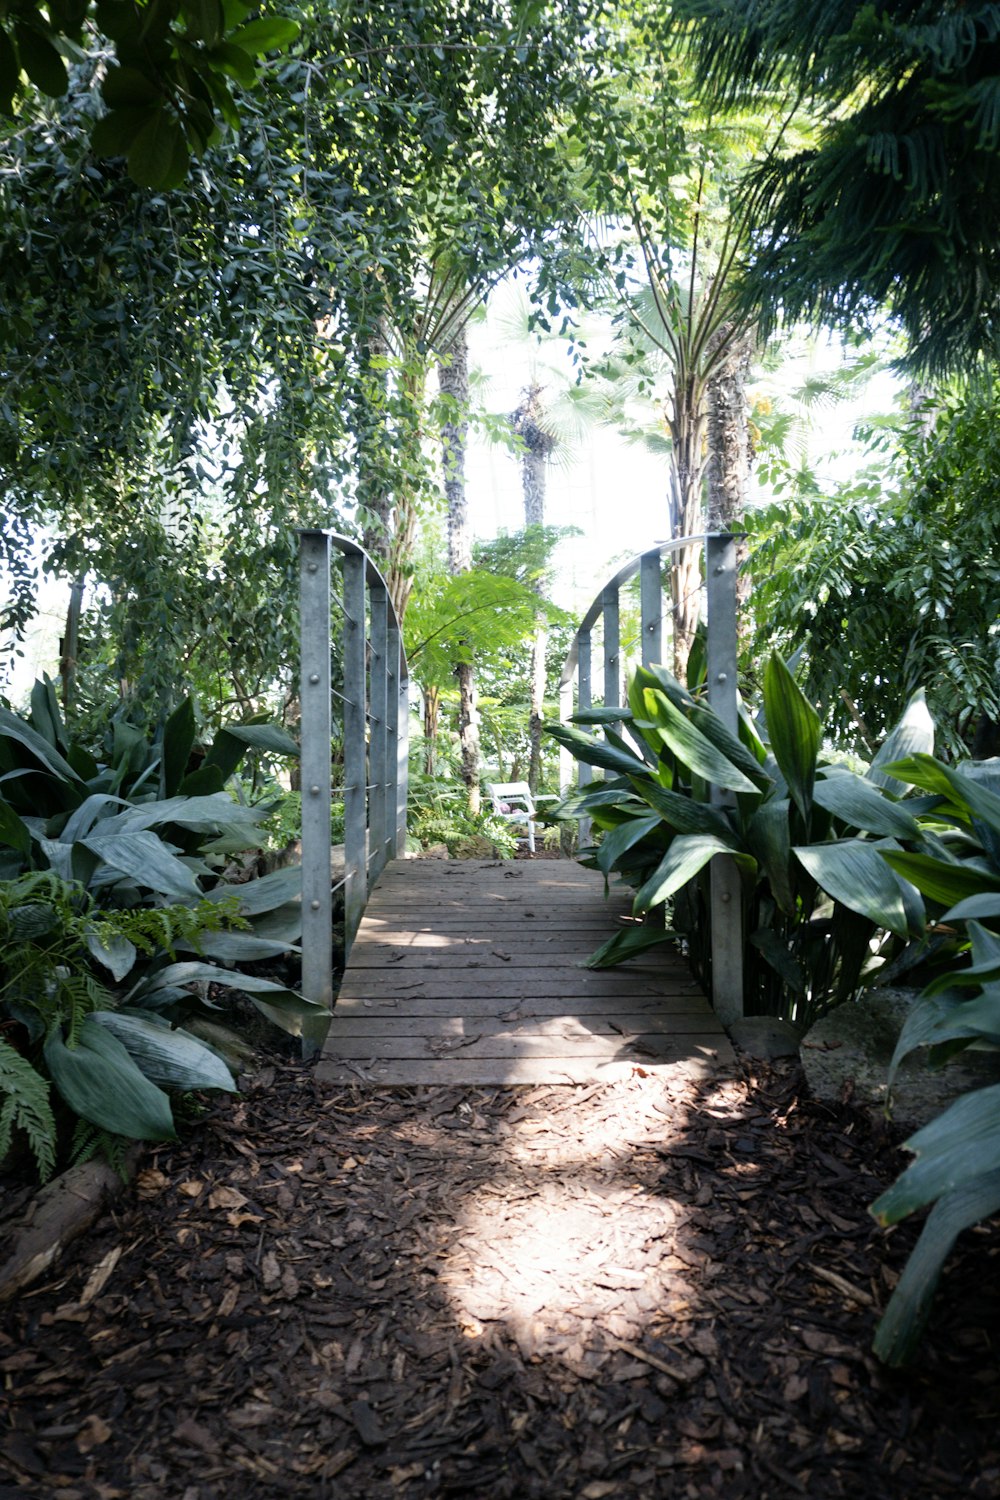 a path through a tropical forest